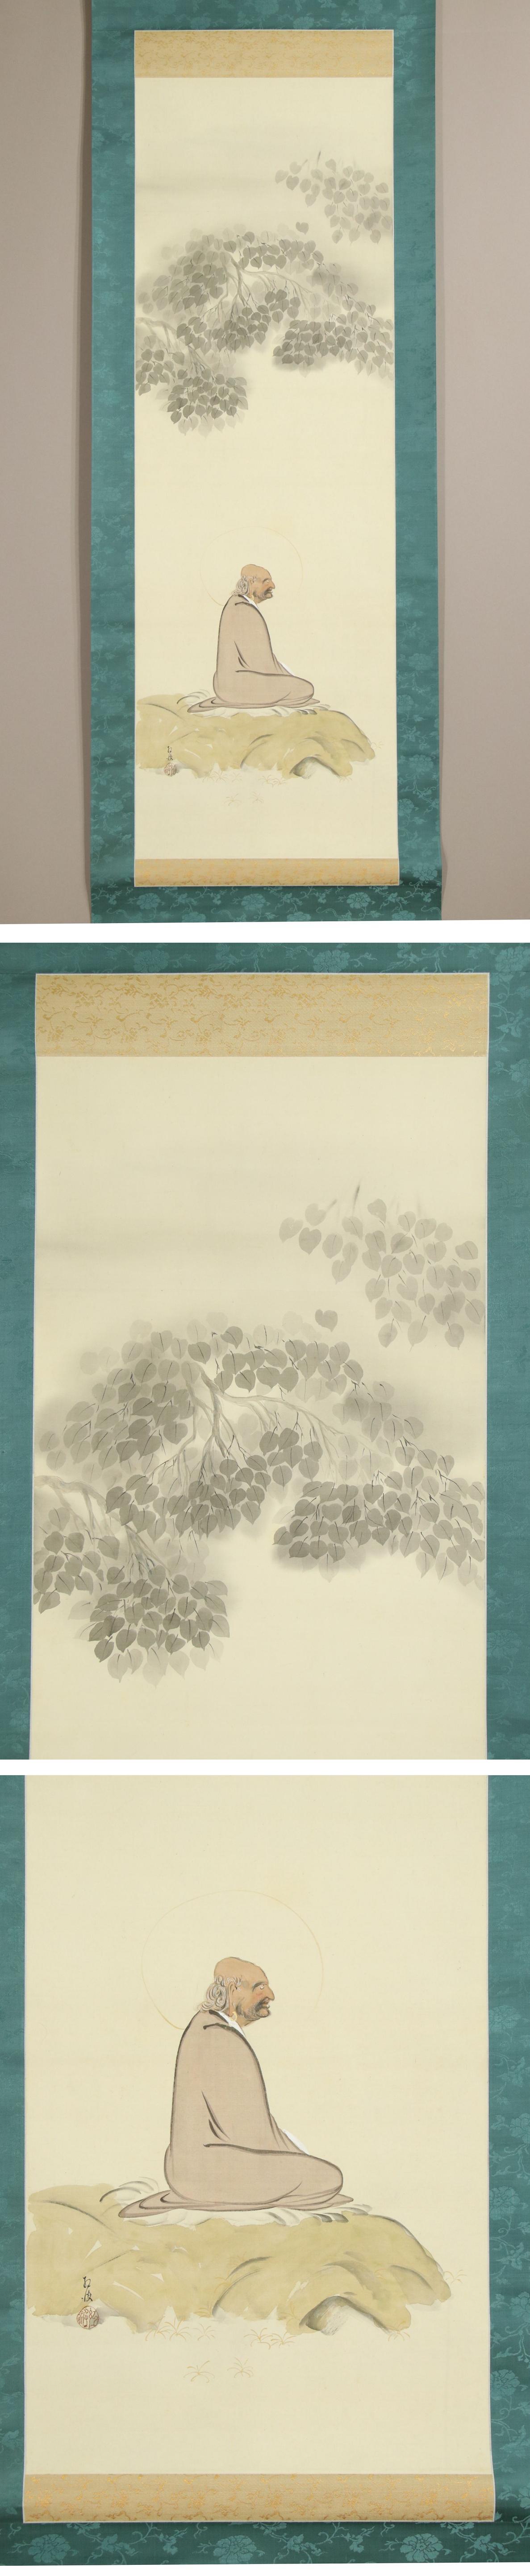 日本盤◆岡田紅波◆樹下達磨図◆日本画◆仏画◆肉筆◆絹本◆掛軸◆k243 人物、菩薩